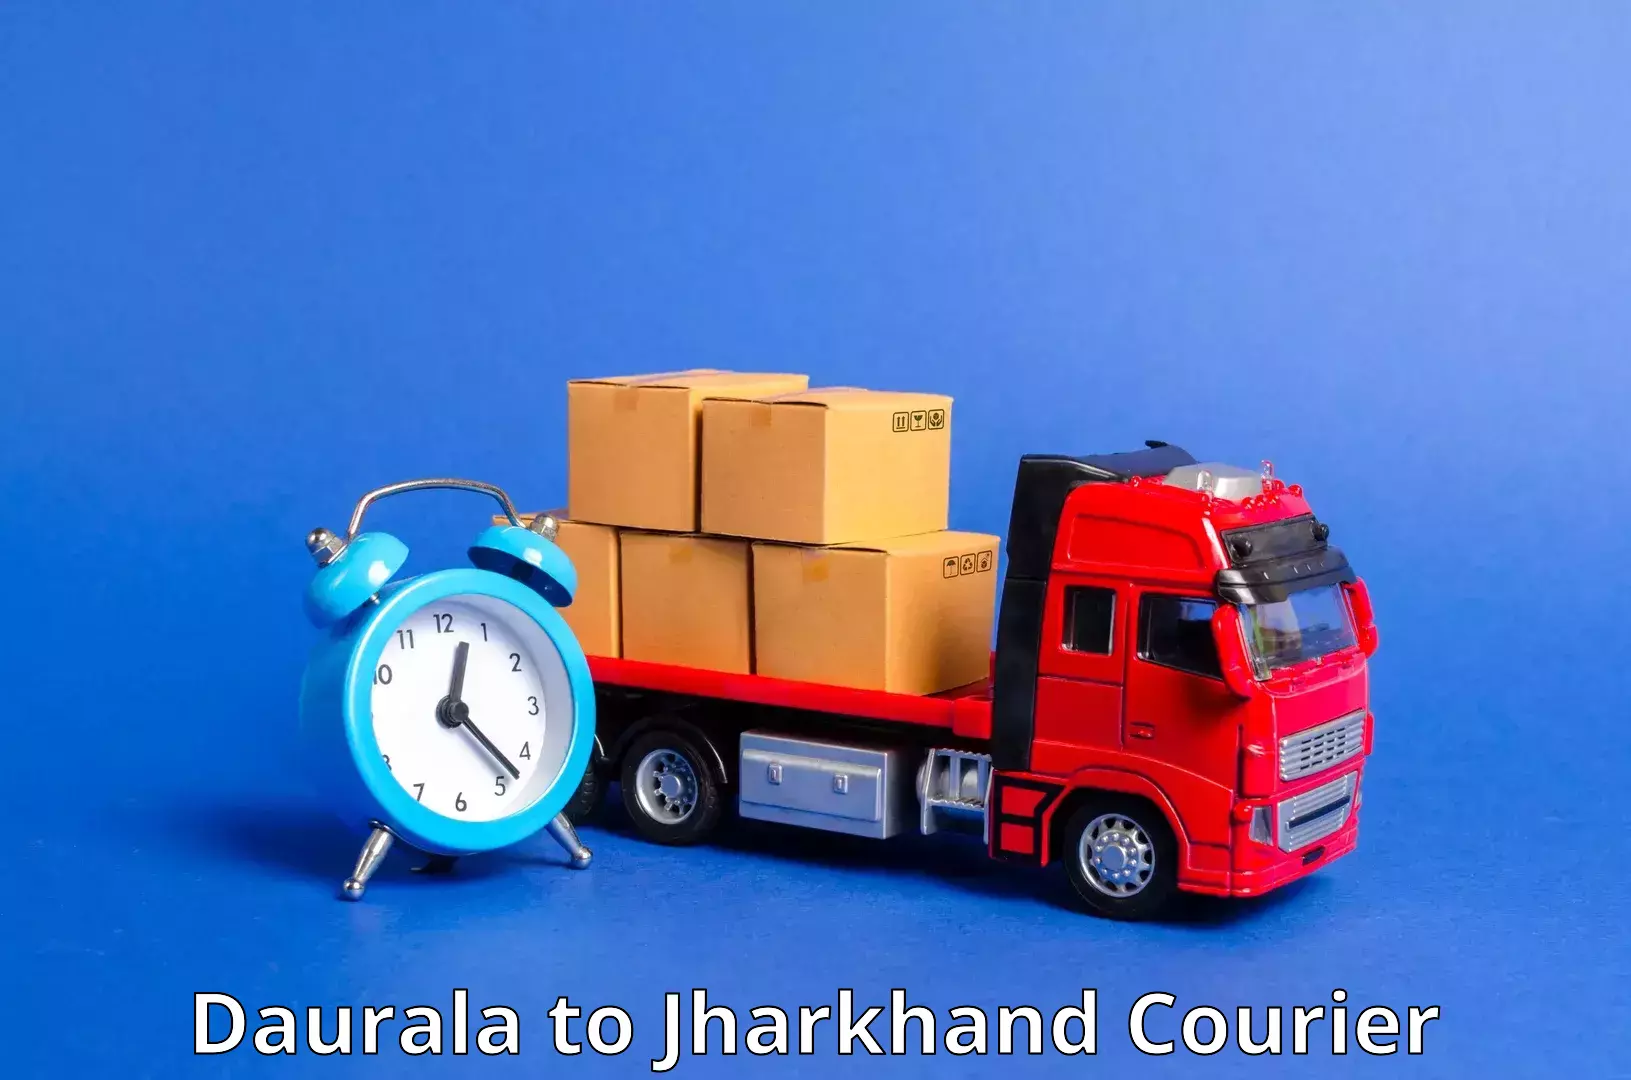 Custom courier packaging Daurala to Medininagar